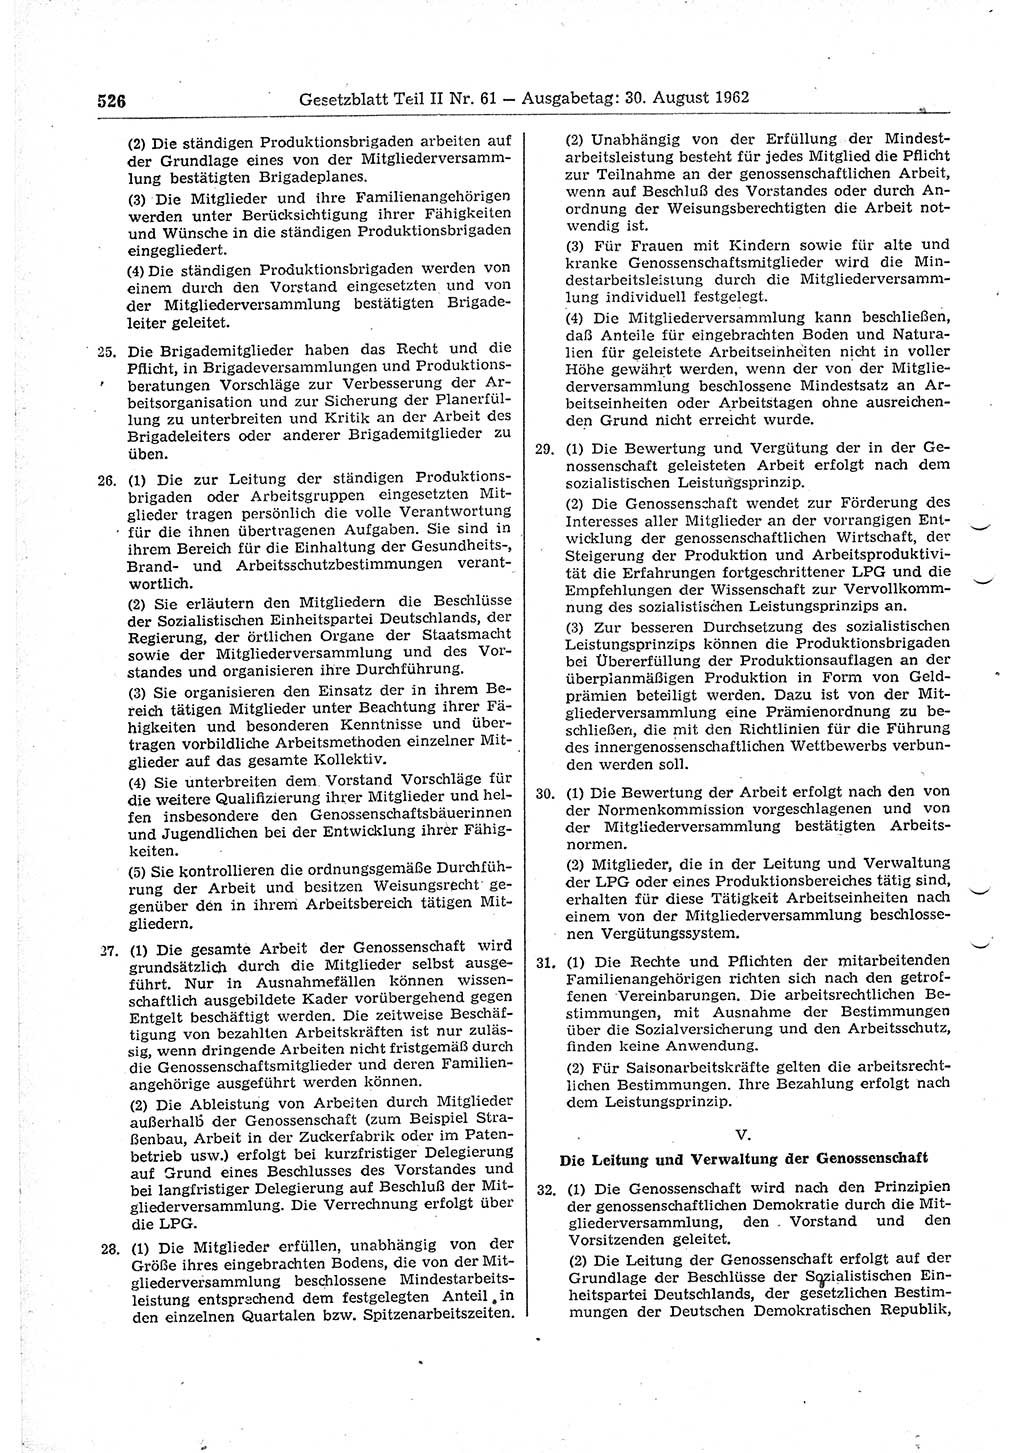 Gesetzblatt (GBl.) der Deutschen Demokratischen Republik (DDR) Teil ⅠⅠ 1962, Seite 526 (GBl. DDR ⅠⅠ 1962, S. 526)